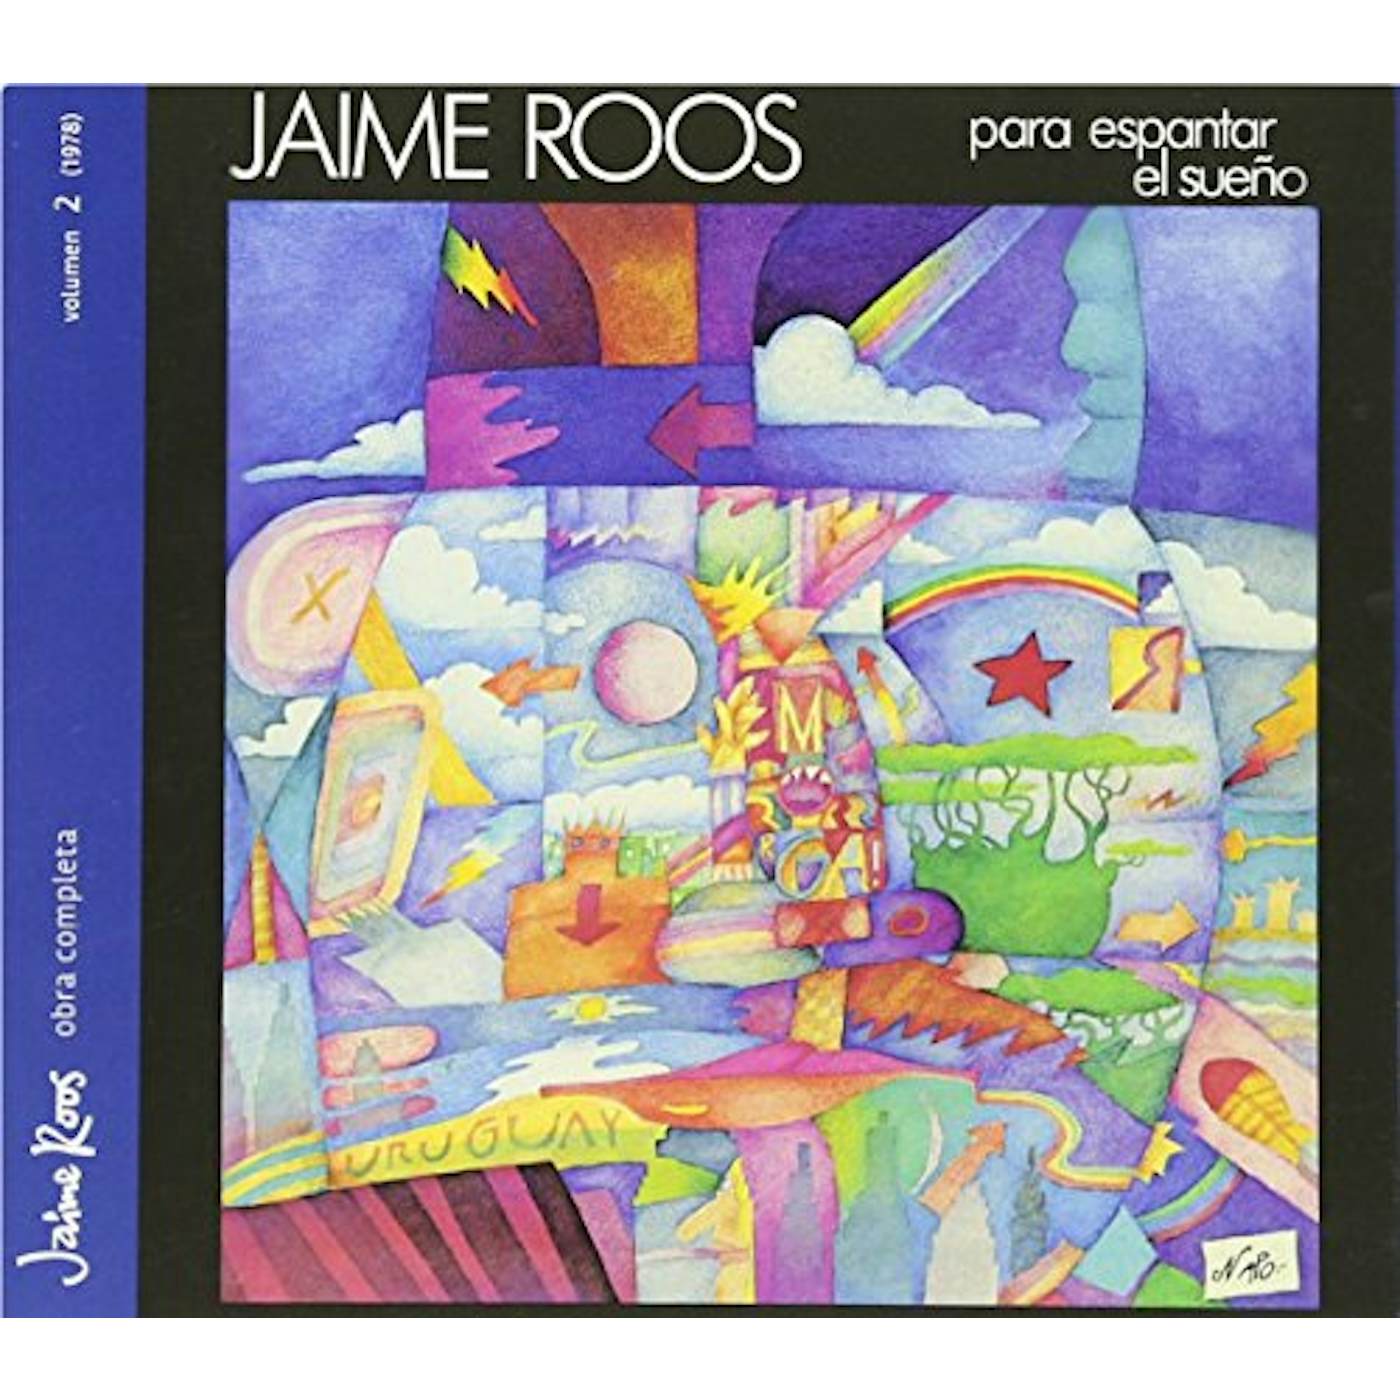 Jaime Roos PARA ESPANTAR EL SUENO CD